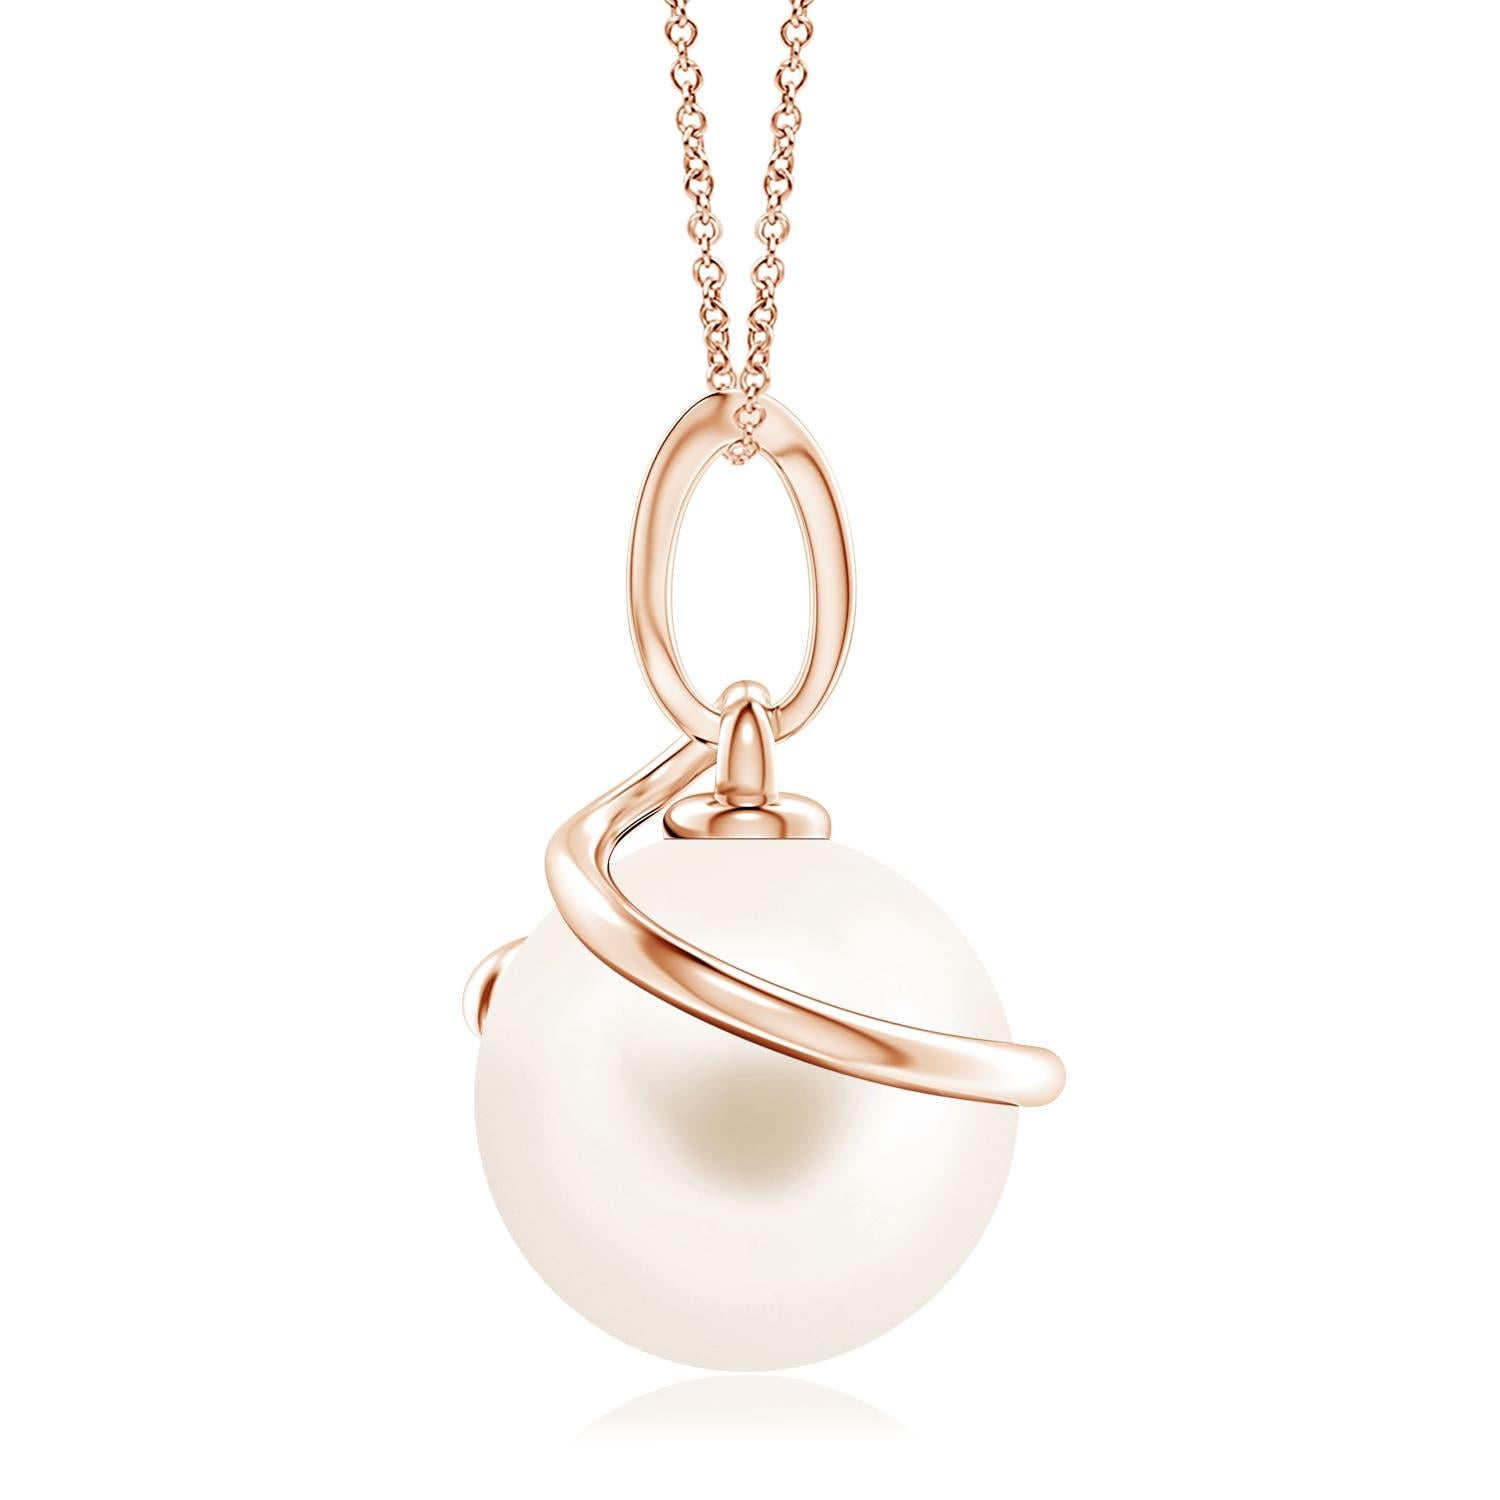 Verleihen Sie Ihren Looks einen eleganten Touch mit diesem Anhänger aus 14-karätigem Roségold mit Süßwasser-Zuchtperlen. Die schöne Perle ist von einer spiralförmigen Metallschlaufe umhüllt und mit einem diamantbesetzten Ballen verbunden.
Die